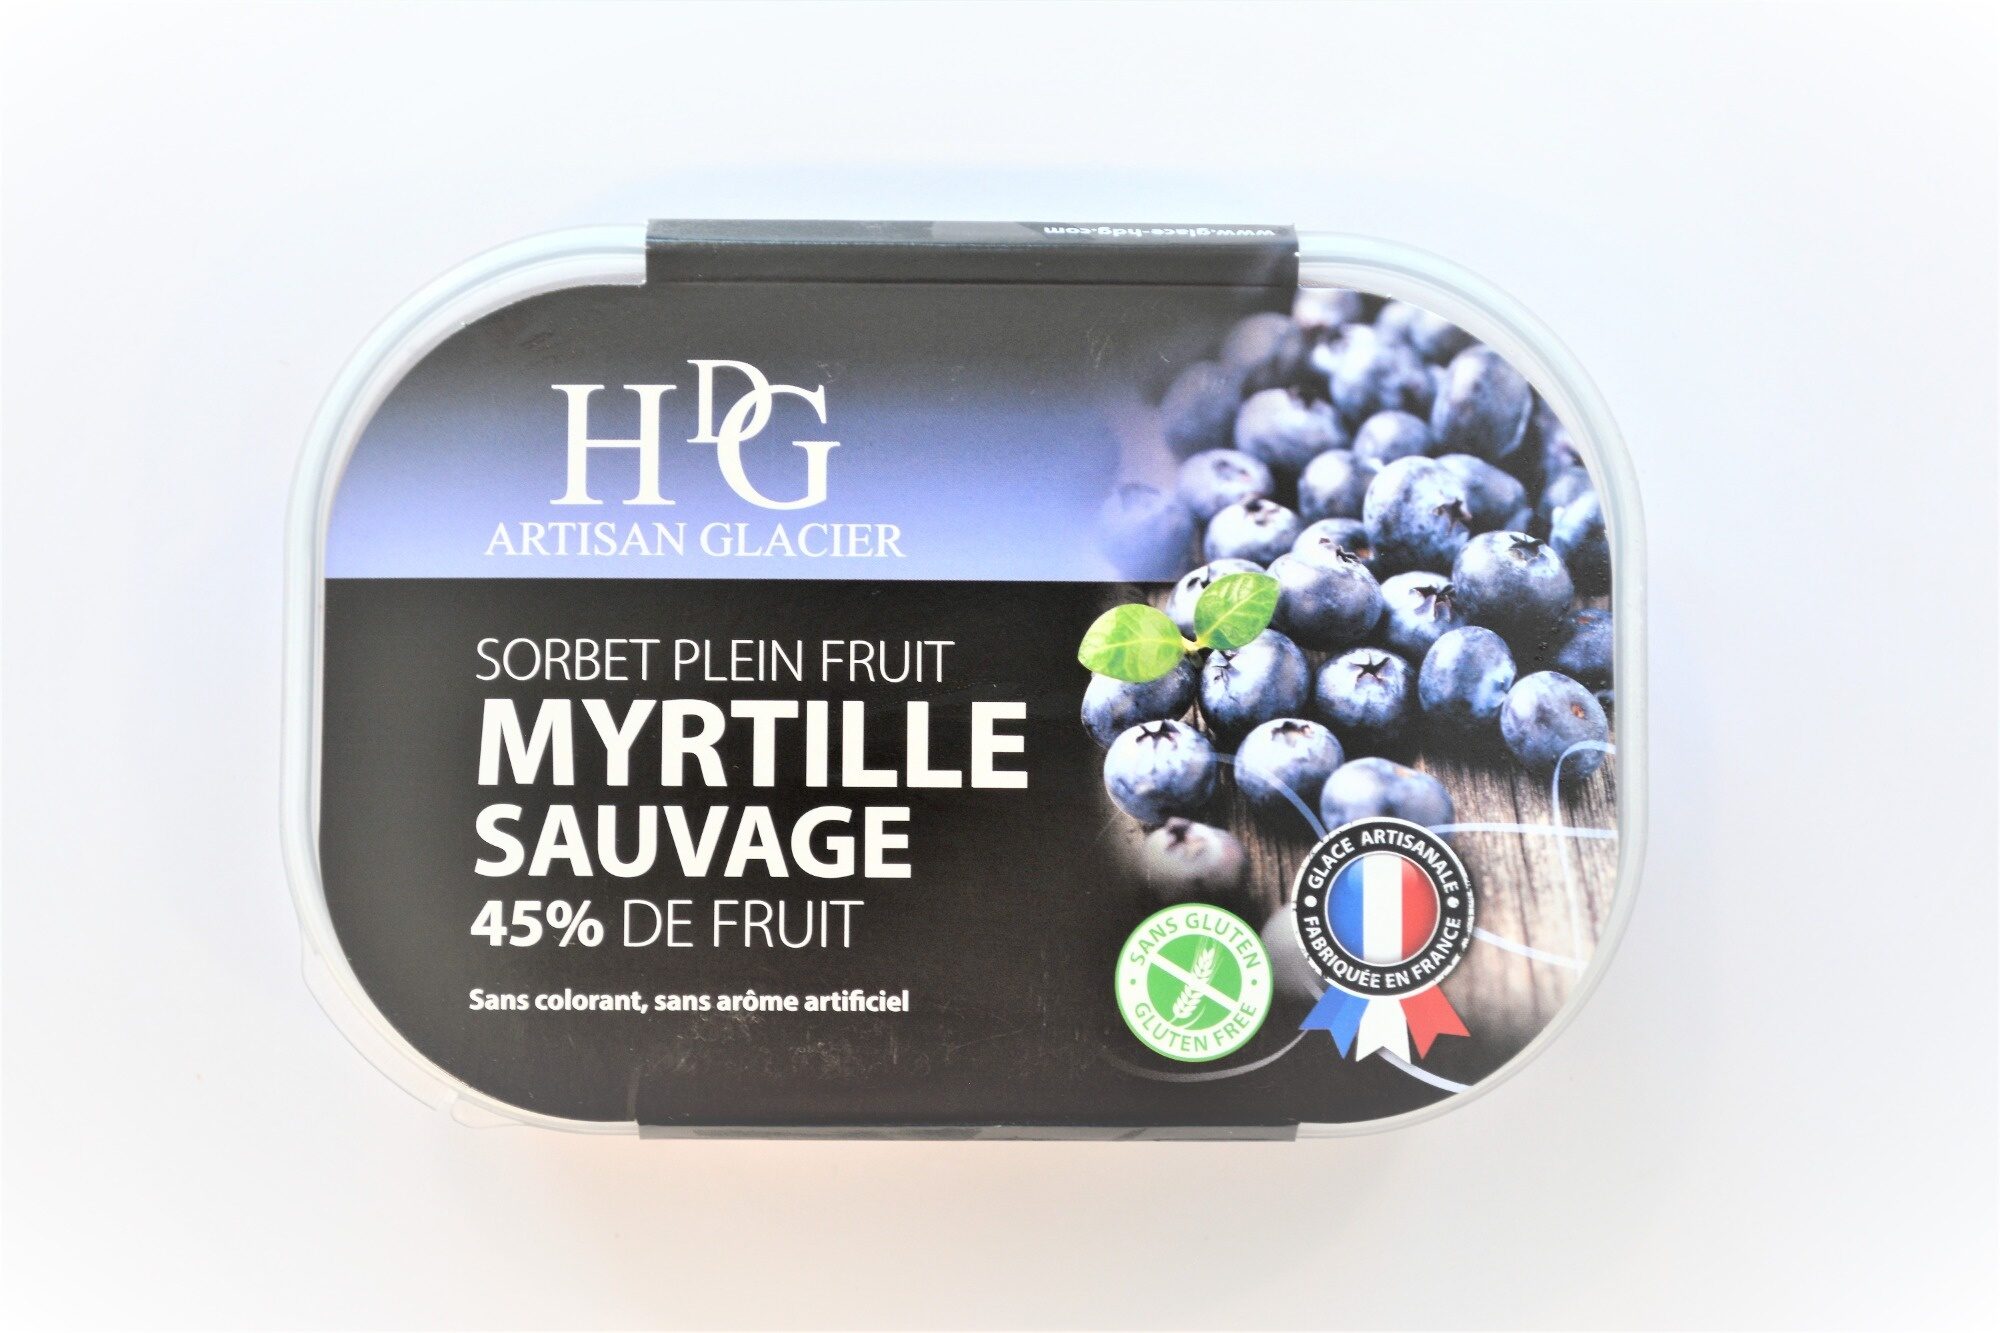 Sorbet plein fruit MYRTILLE SAUVAGE, 58% de fruit - Producto - fr